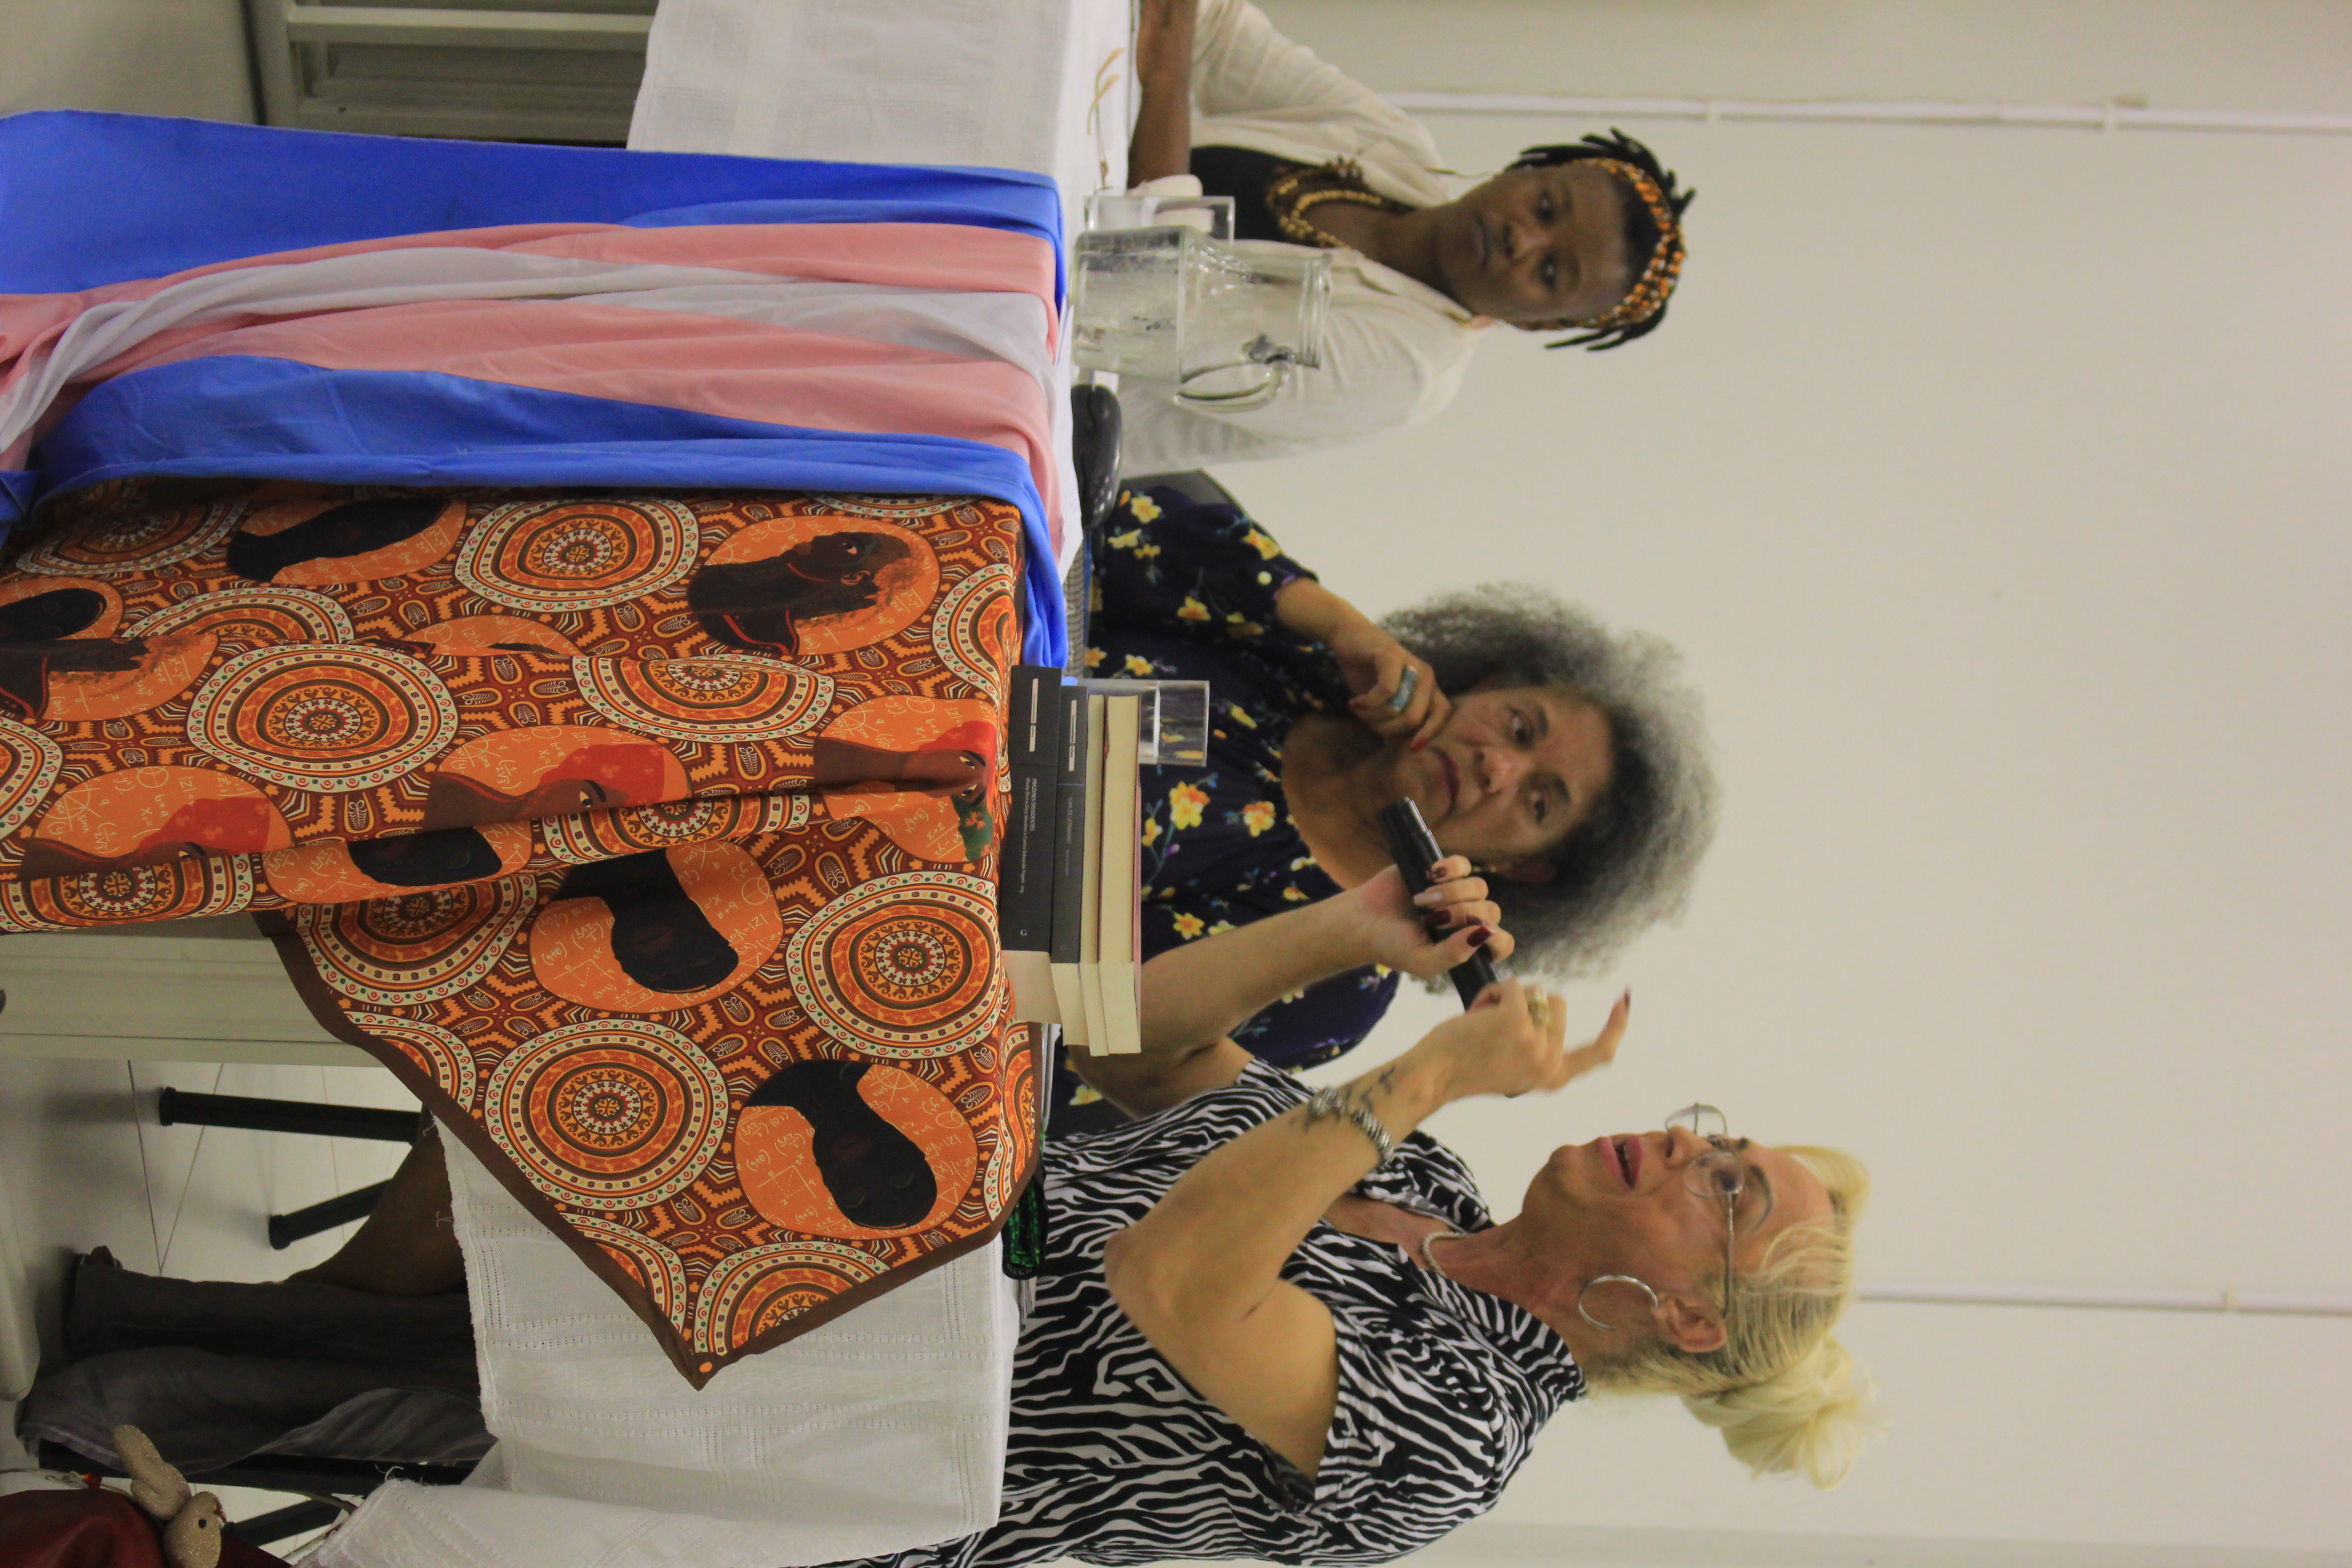 Sara mostra a bandeira transgênero e a capulana, símbolo do movimento negro